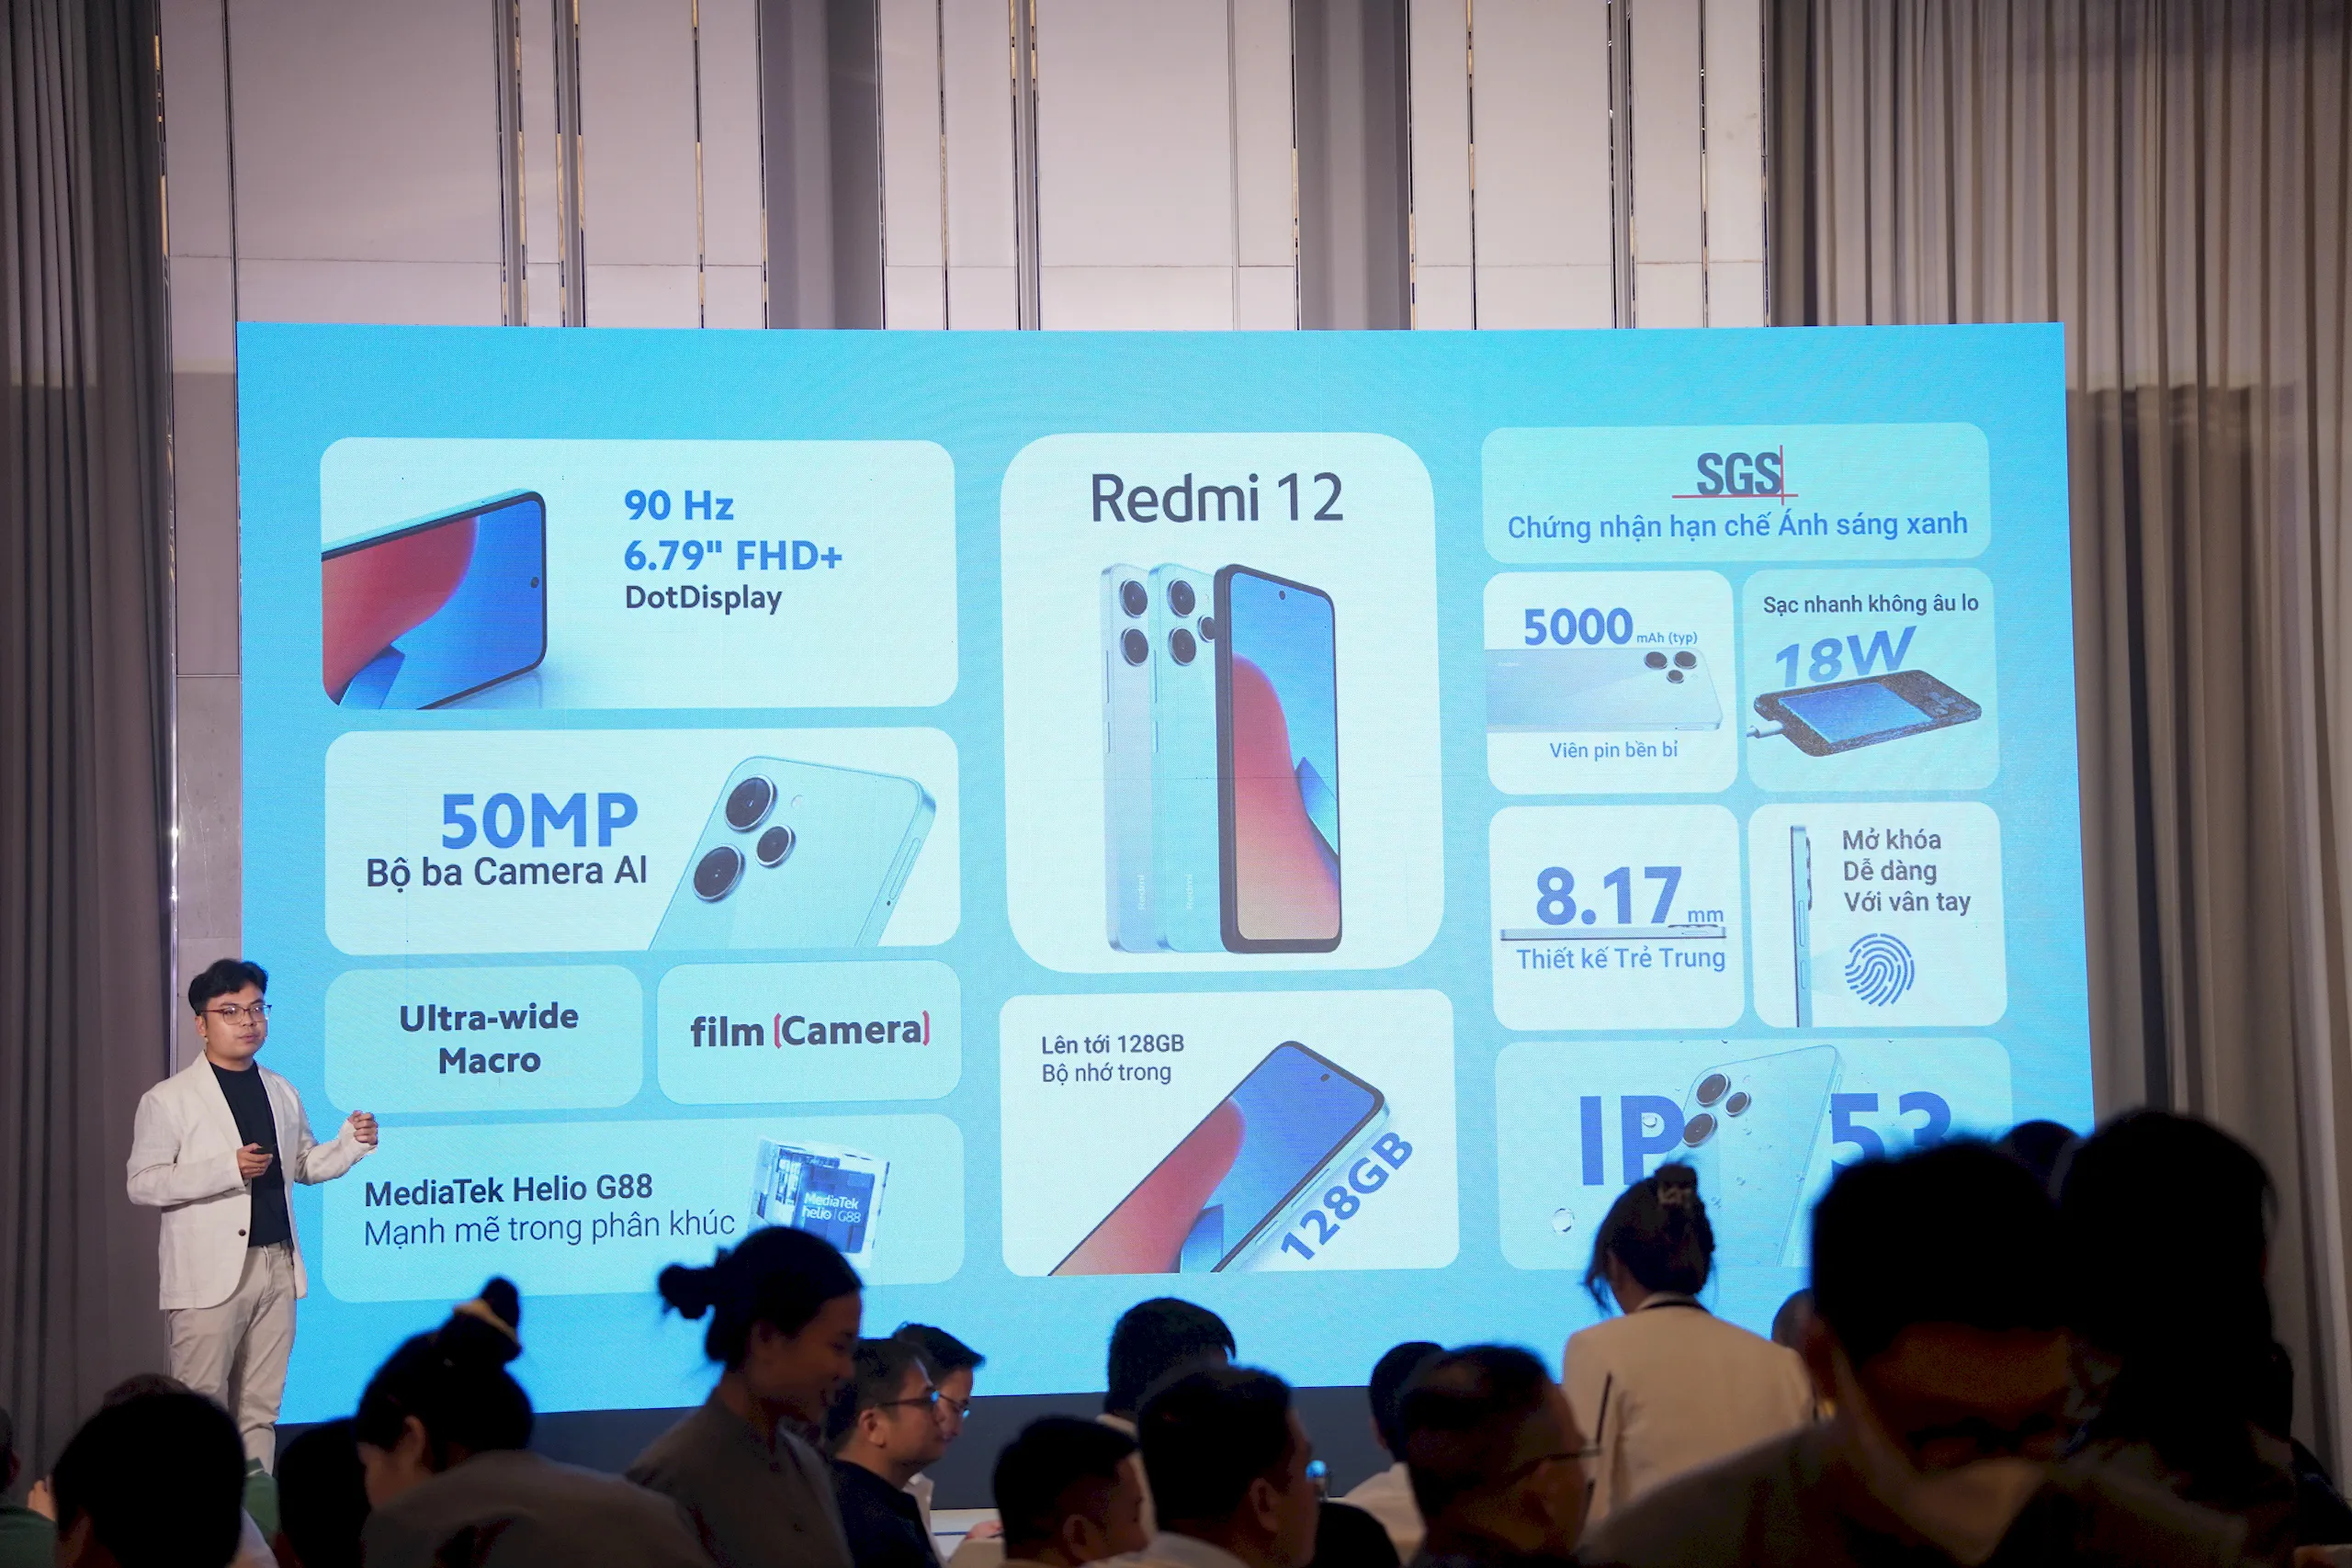 Xiaomi ký kết hợp tác chiến lược với Thế Giới Di Động mở bán đặc biệt Redmi 12, hiệu năng mạnh mẽ song hành cùng thiết kế mặt lưng kính sang trọng